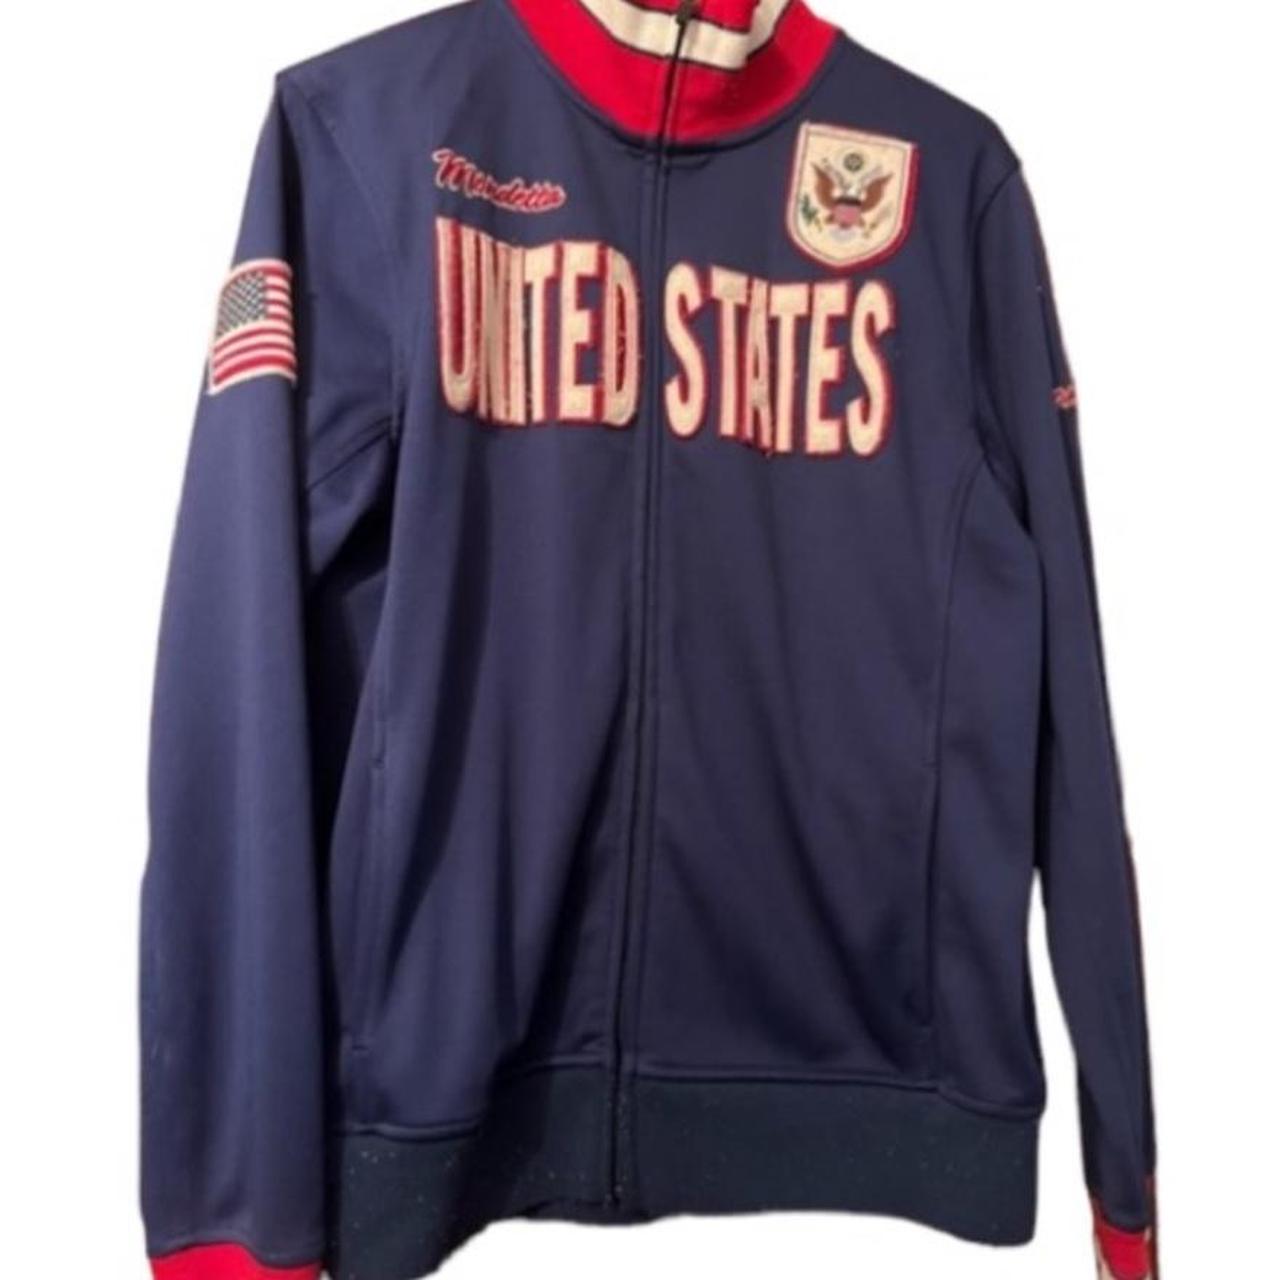 Mondetta Soccer Jacket Size Medium USA Men’s Track